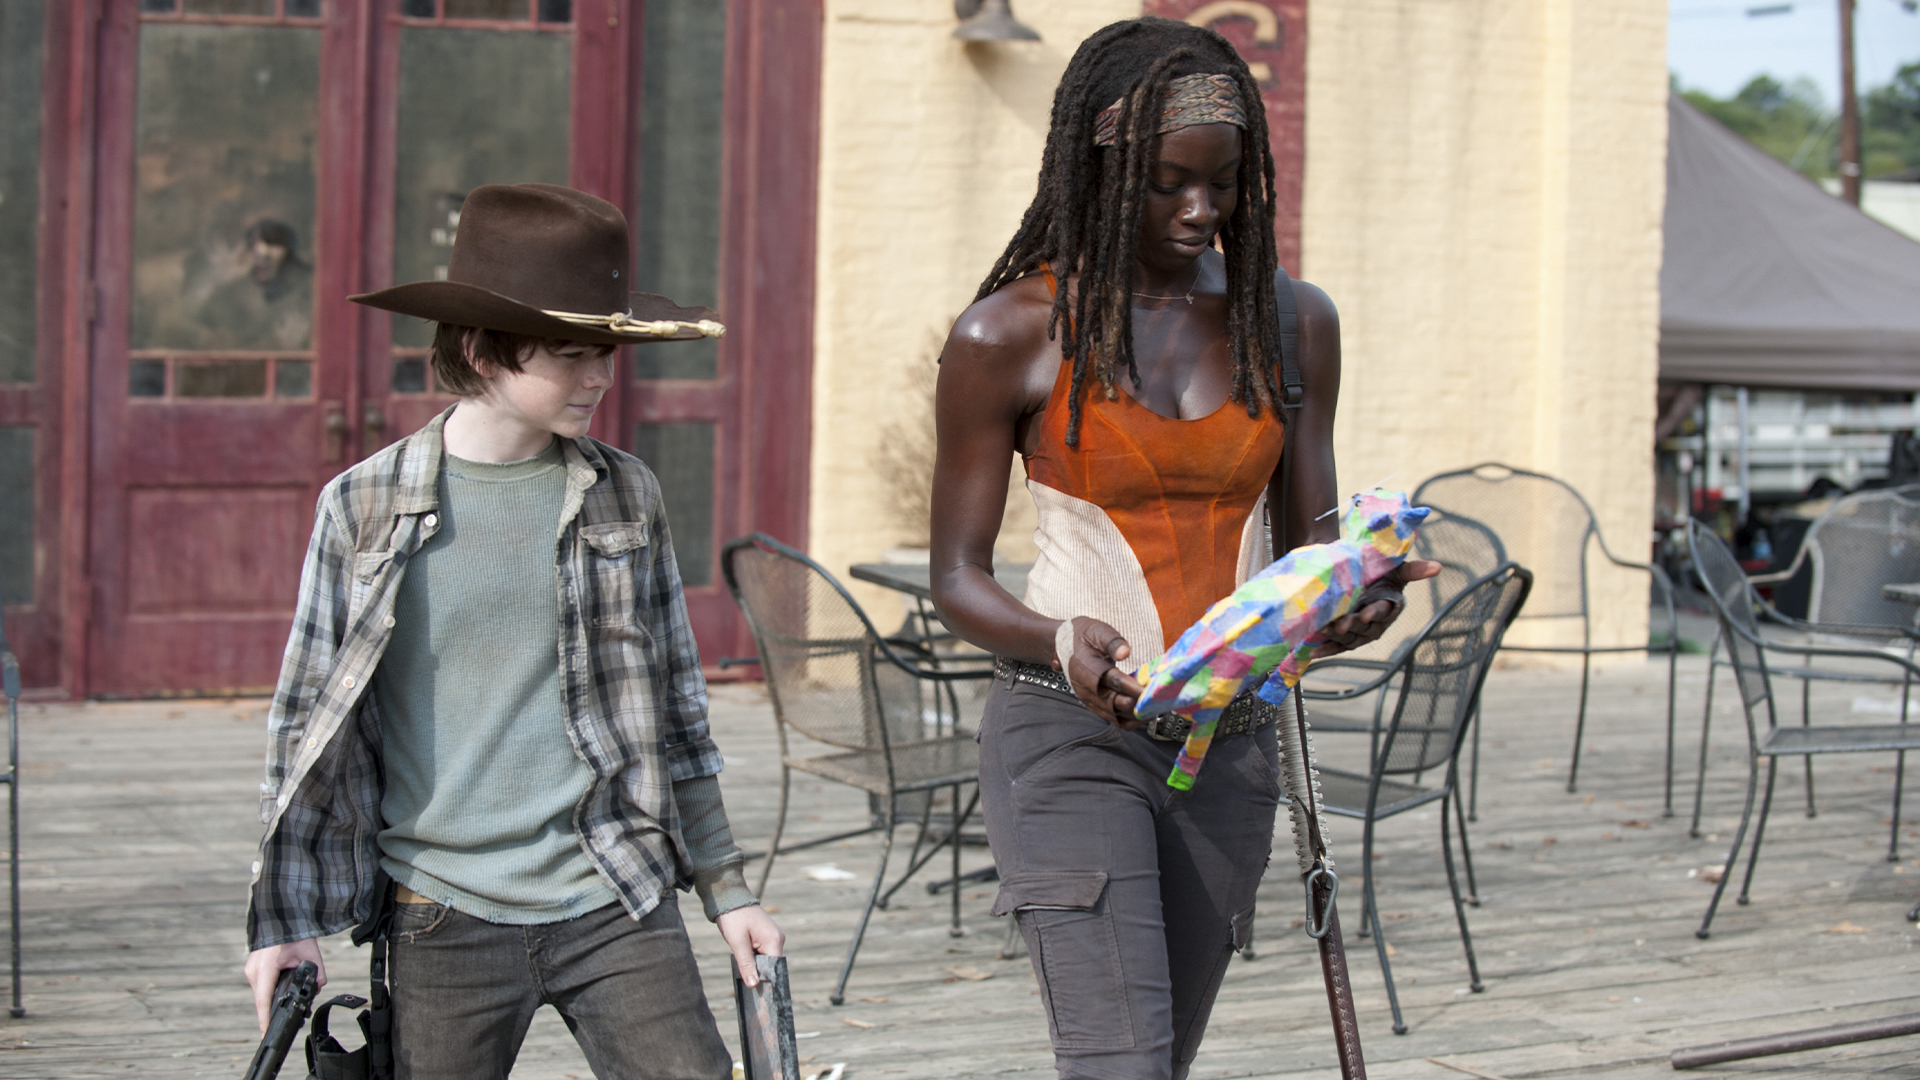 The Walking Dead: Best of Michonne Season 1 Episode 2 - Clear: Best of Michonne Edition